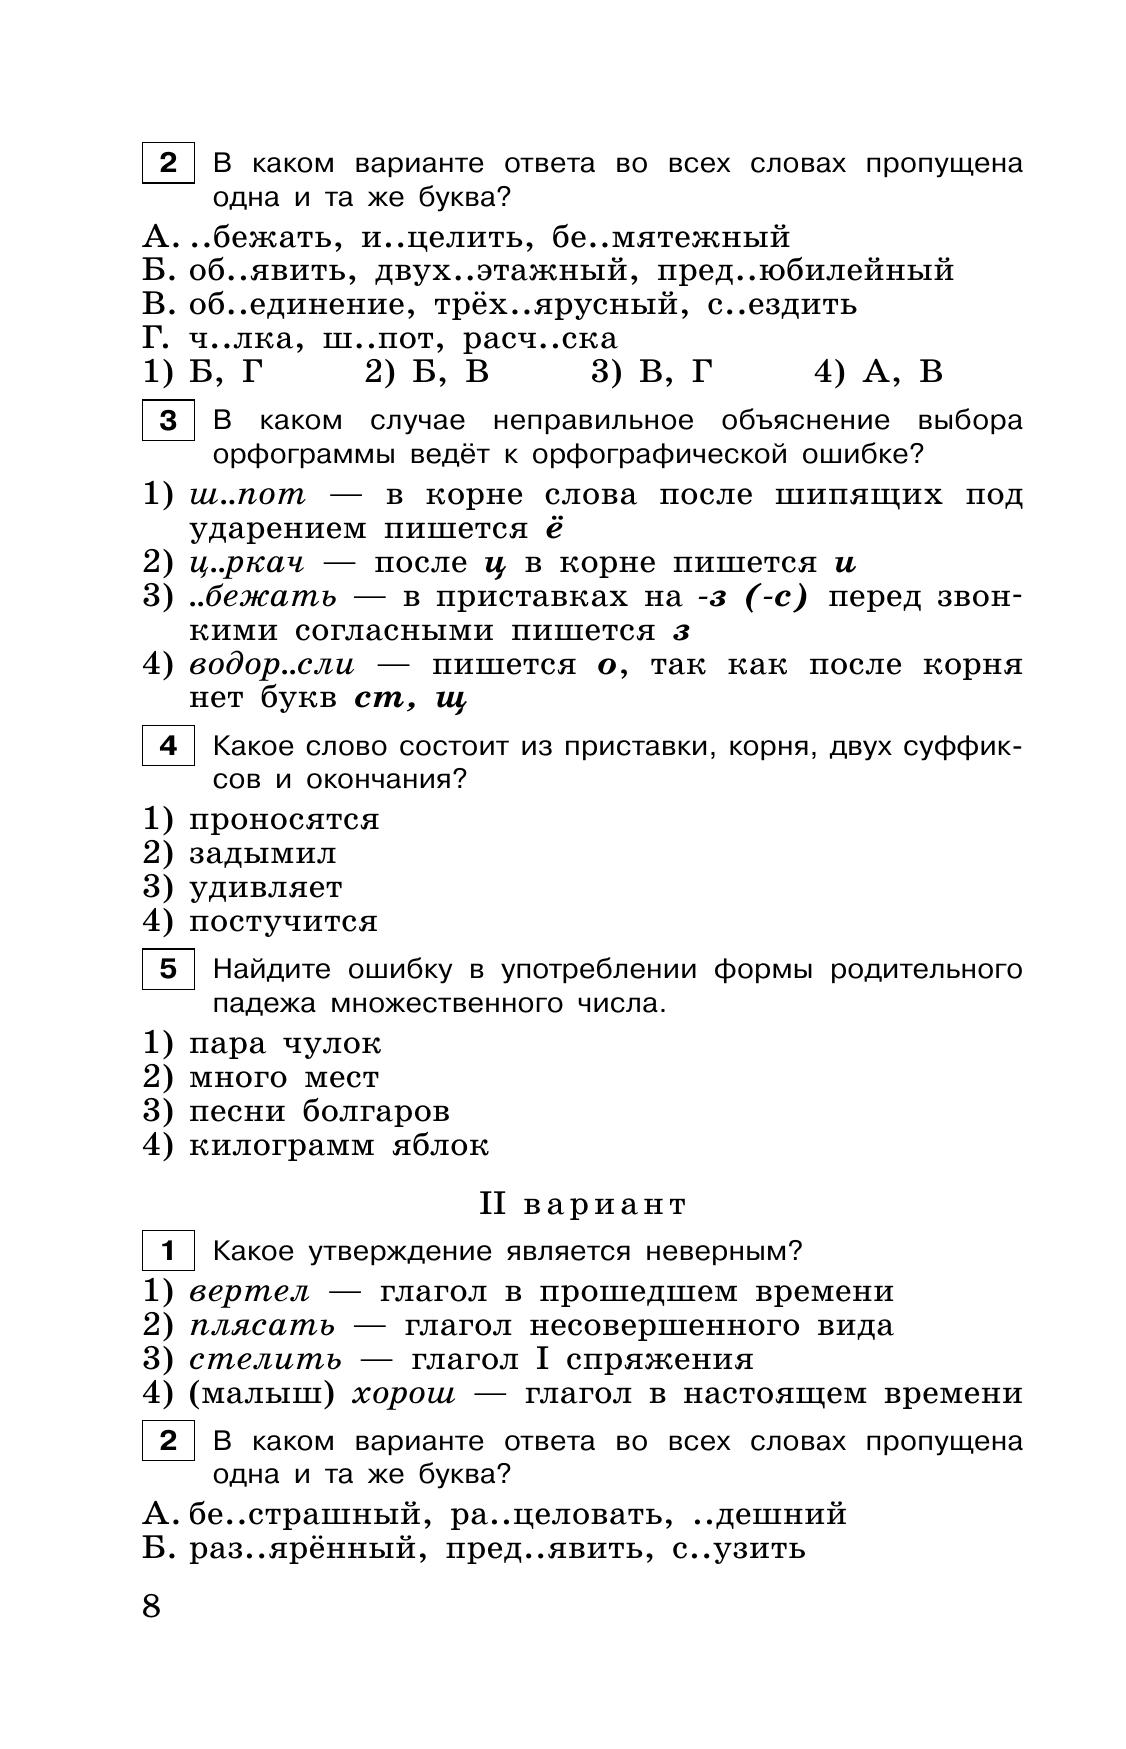 Тестовые задания по русскому языку. 6 класс 2